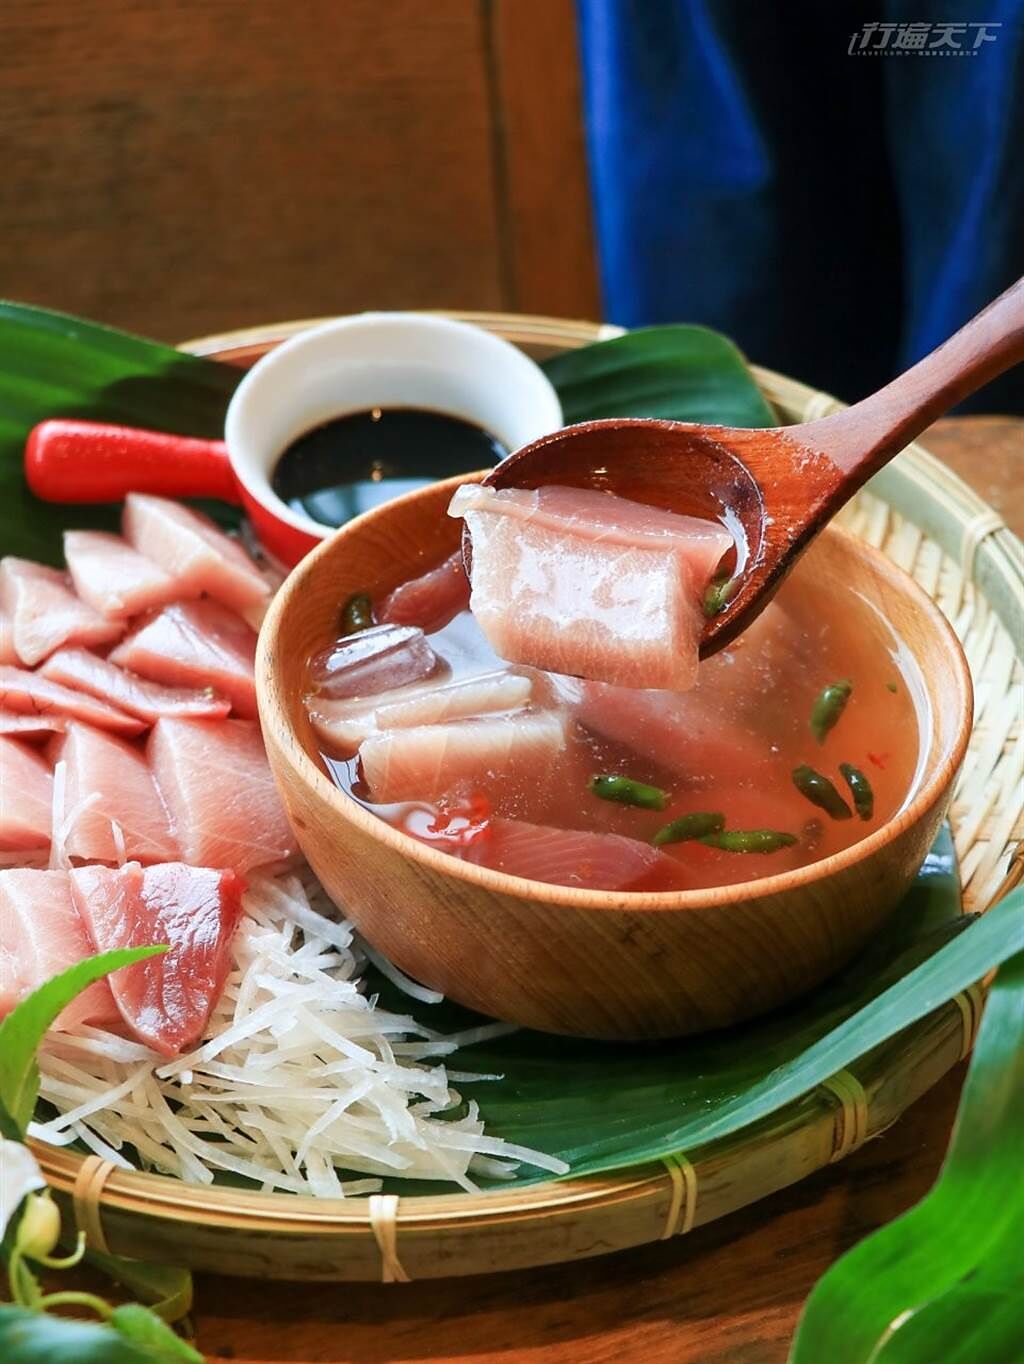 阿美族料理生魚片的方式是浸泡在辣椒及鹽裡，不沾芥末直接吃，口感特別滑嫩。(圖/行遍天下提供)